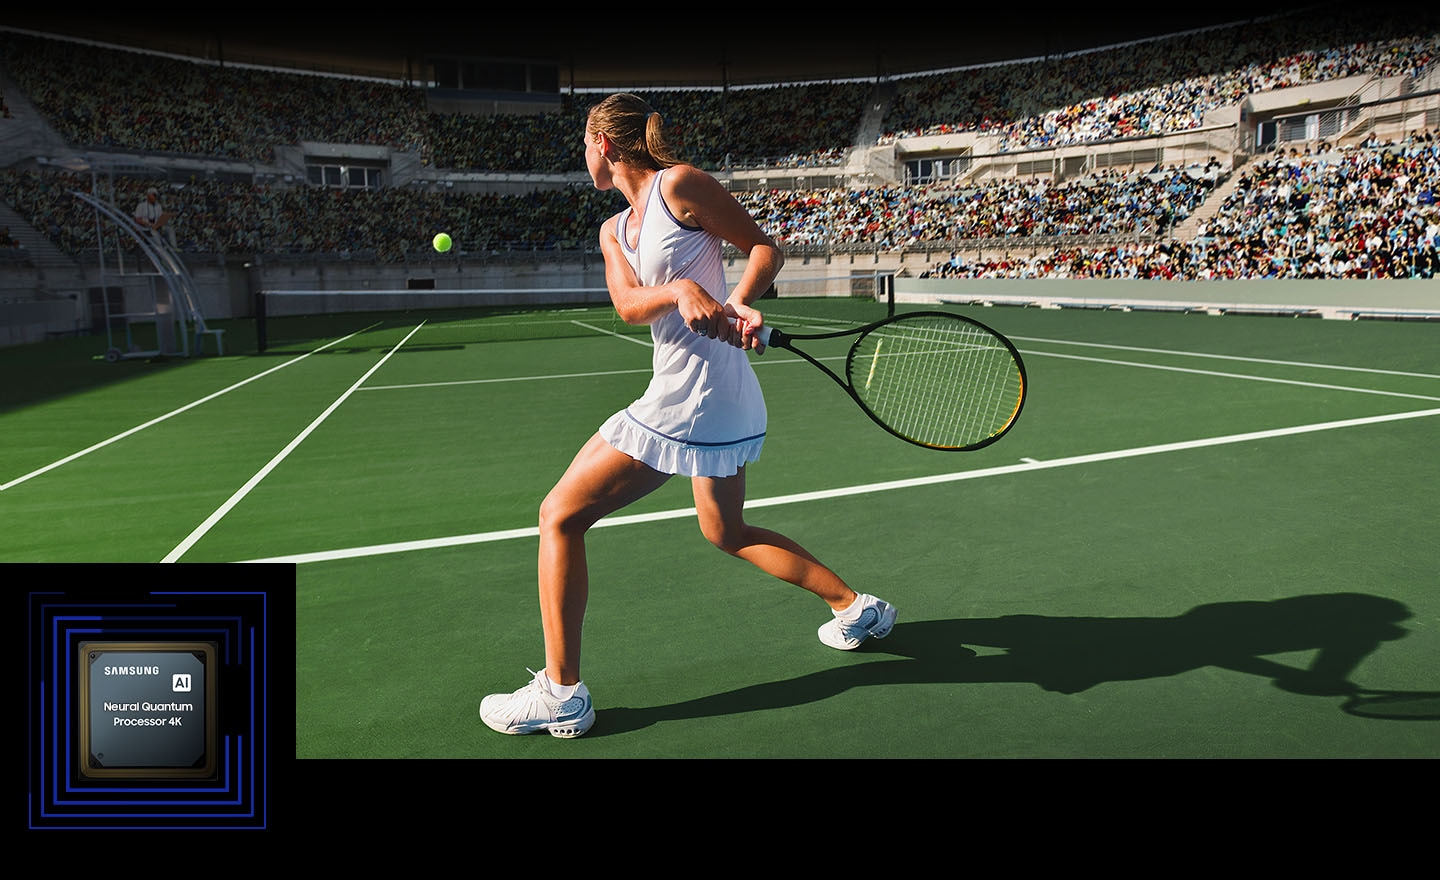 Kobieta grająca w tenisa - neuronowy procesor AI Quantum 4K w telewizorach Samsung Neo QLED 4K QN95C 